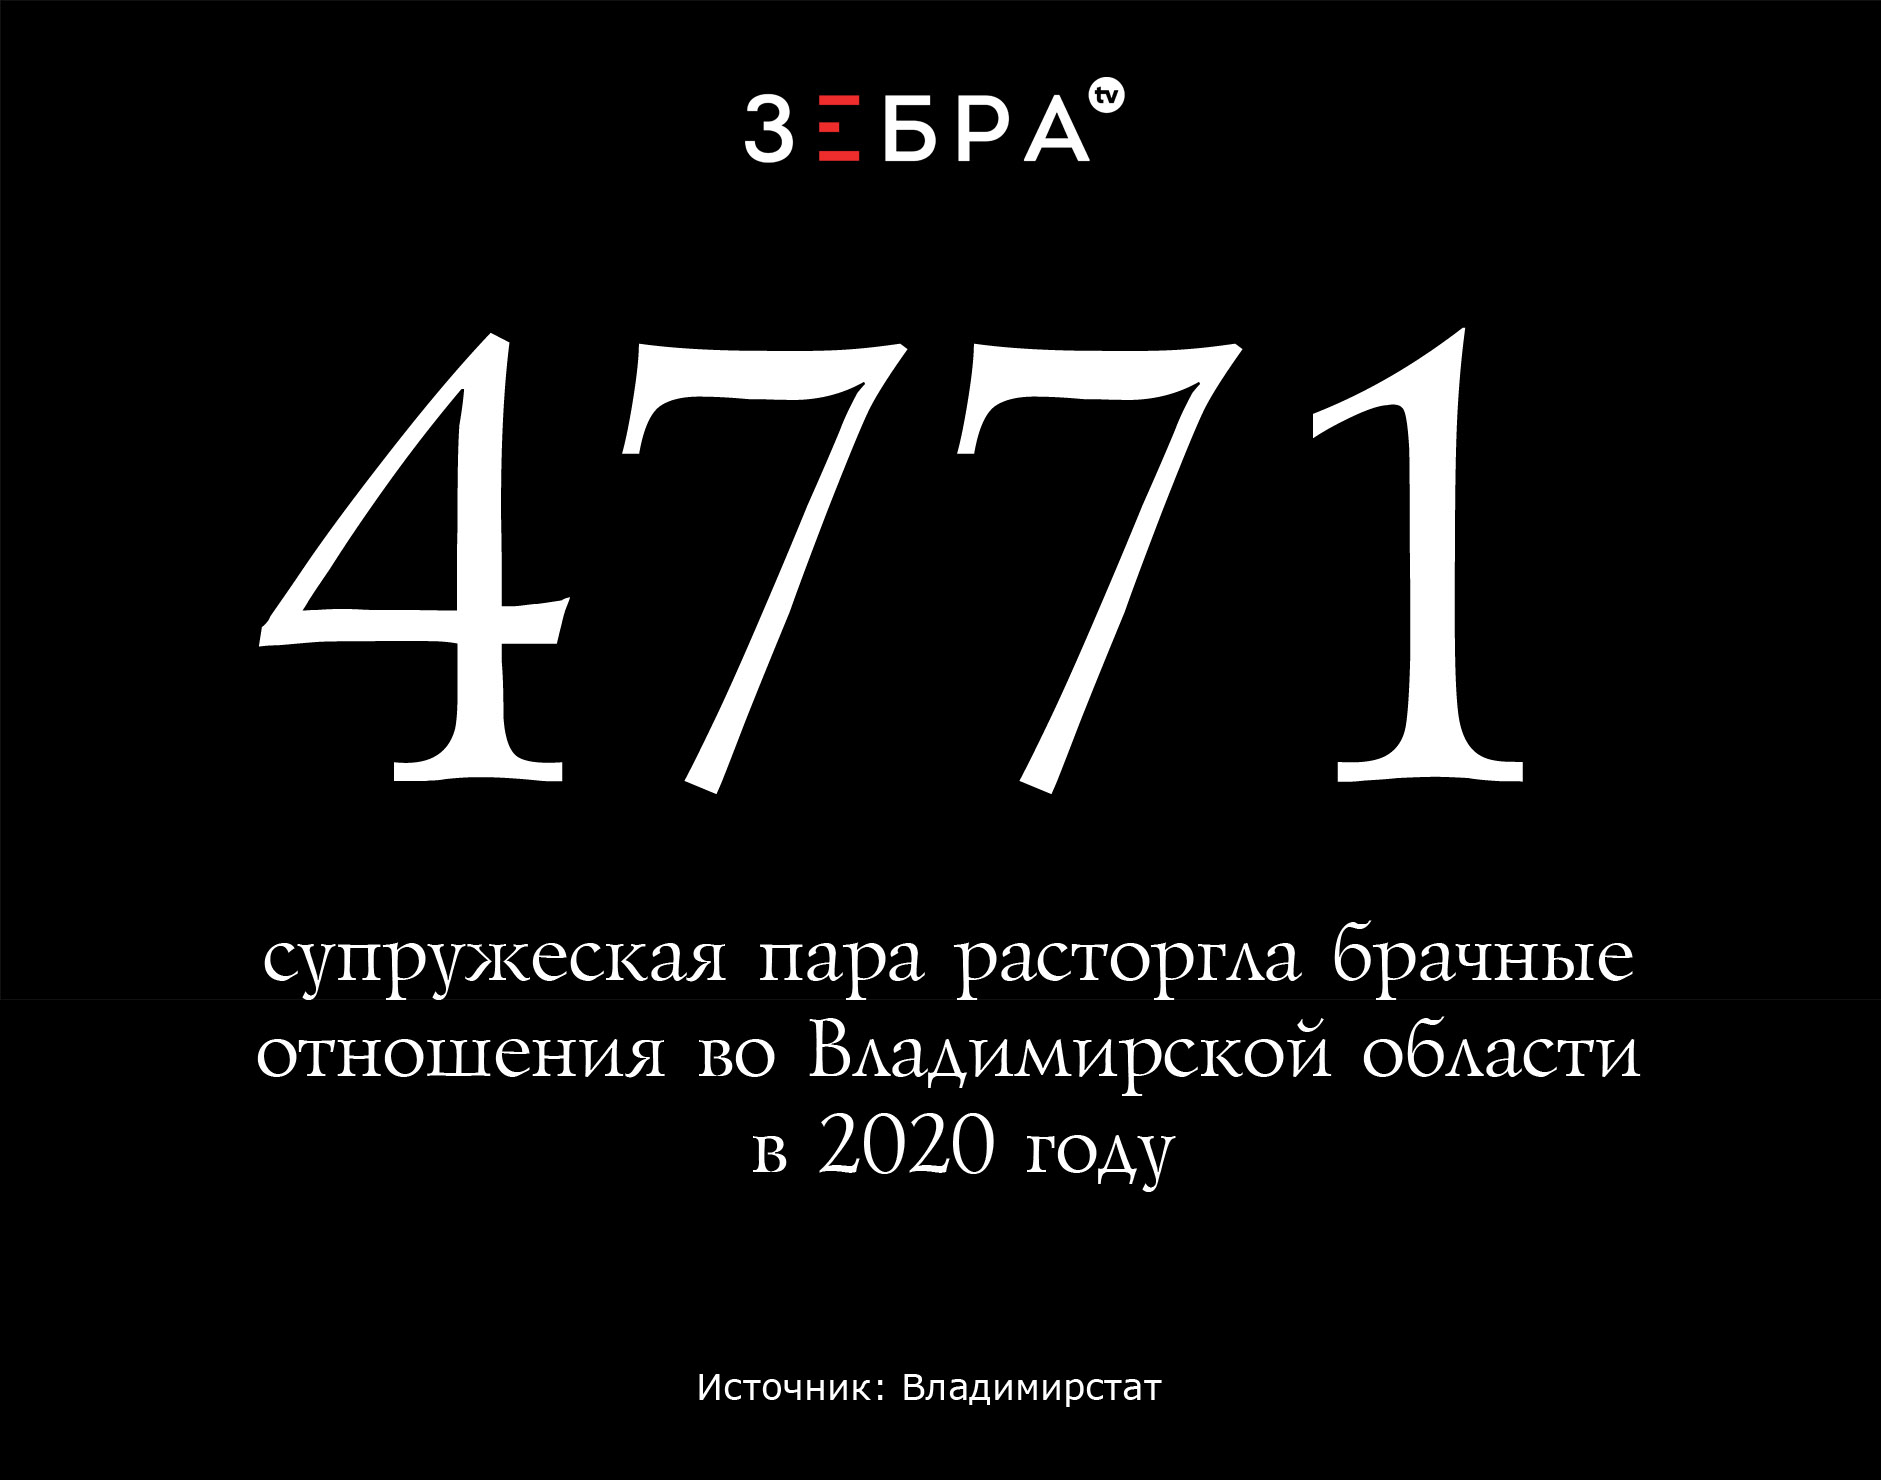 4771 супружеская пара расторгла брачные отношения во Владимирской области в 2020 году. Источник: Владимирстат